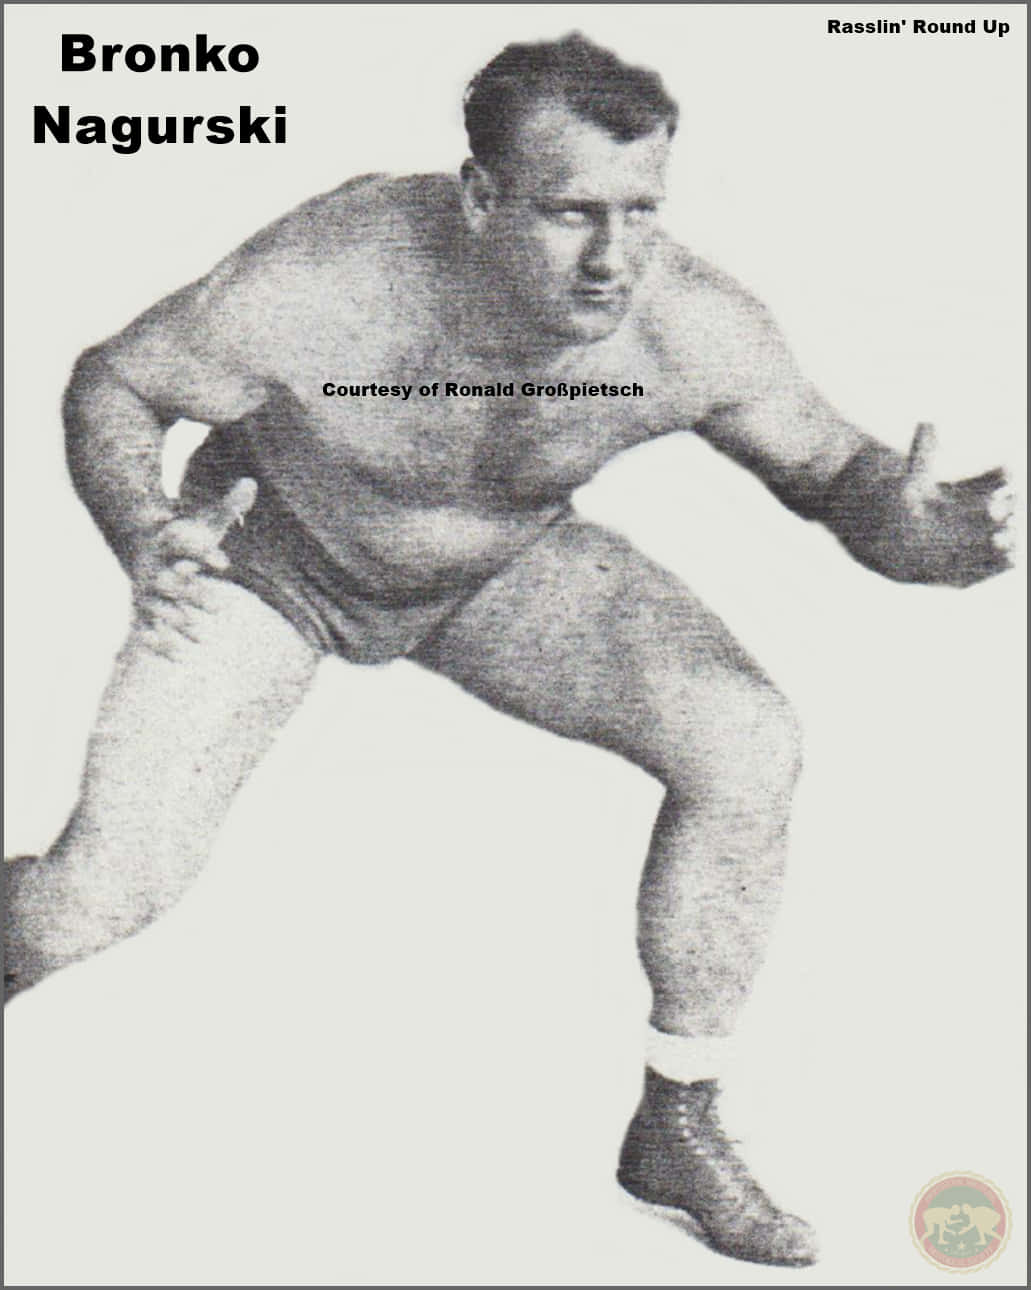 Bronko Nagurski All-American Pro Wrestler Wallpaper